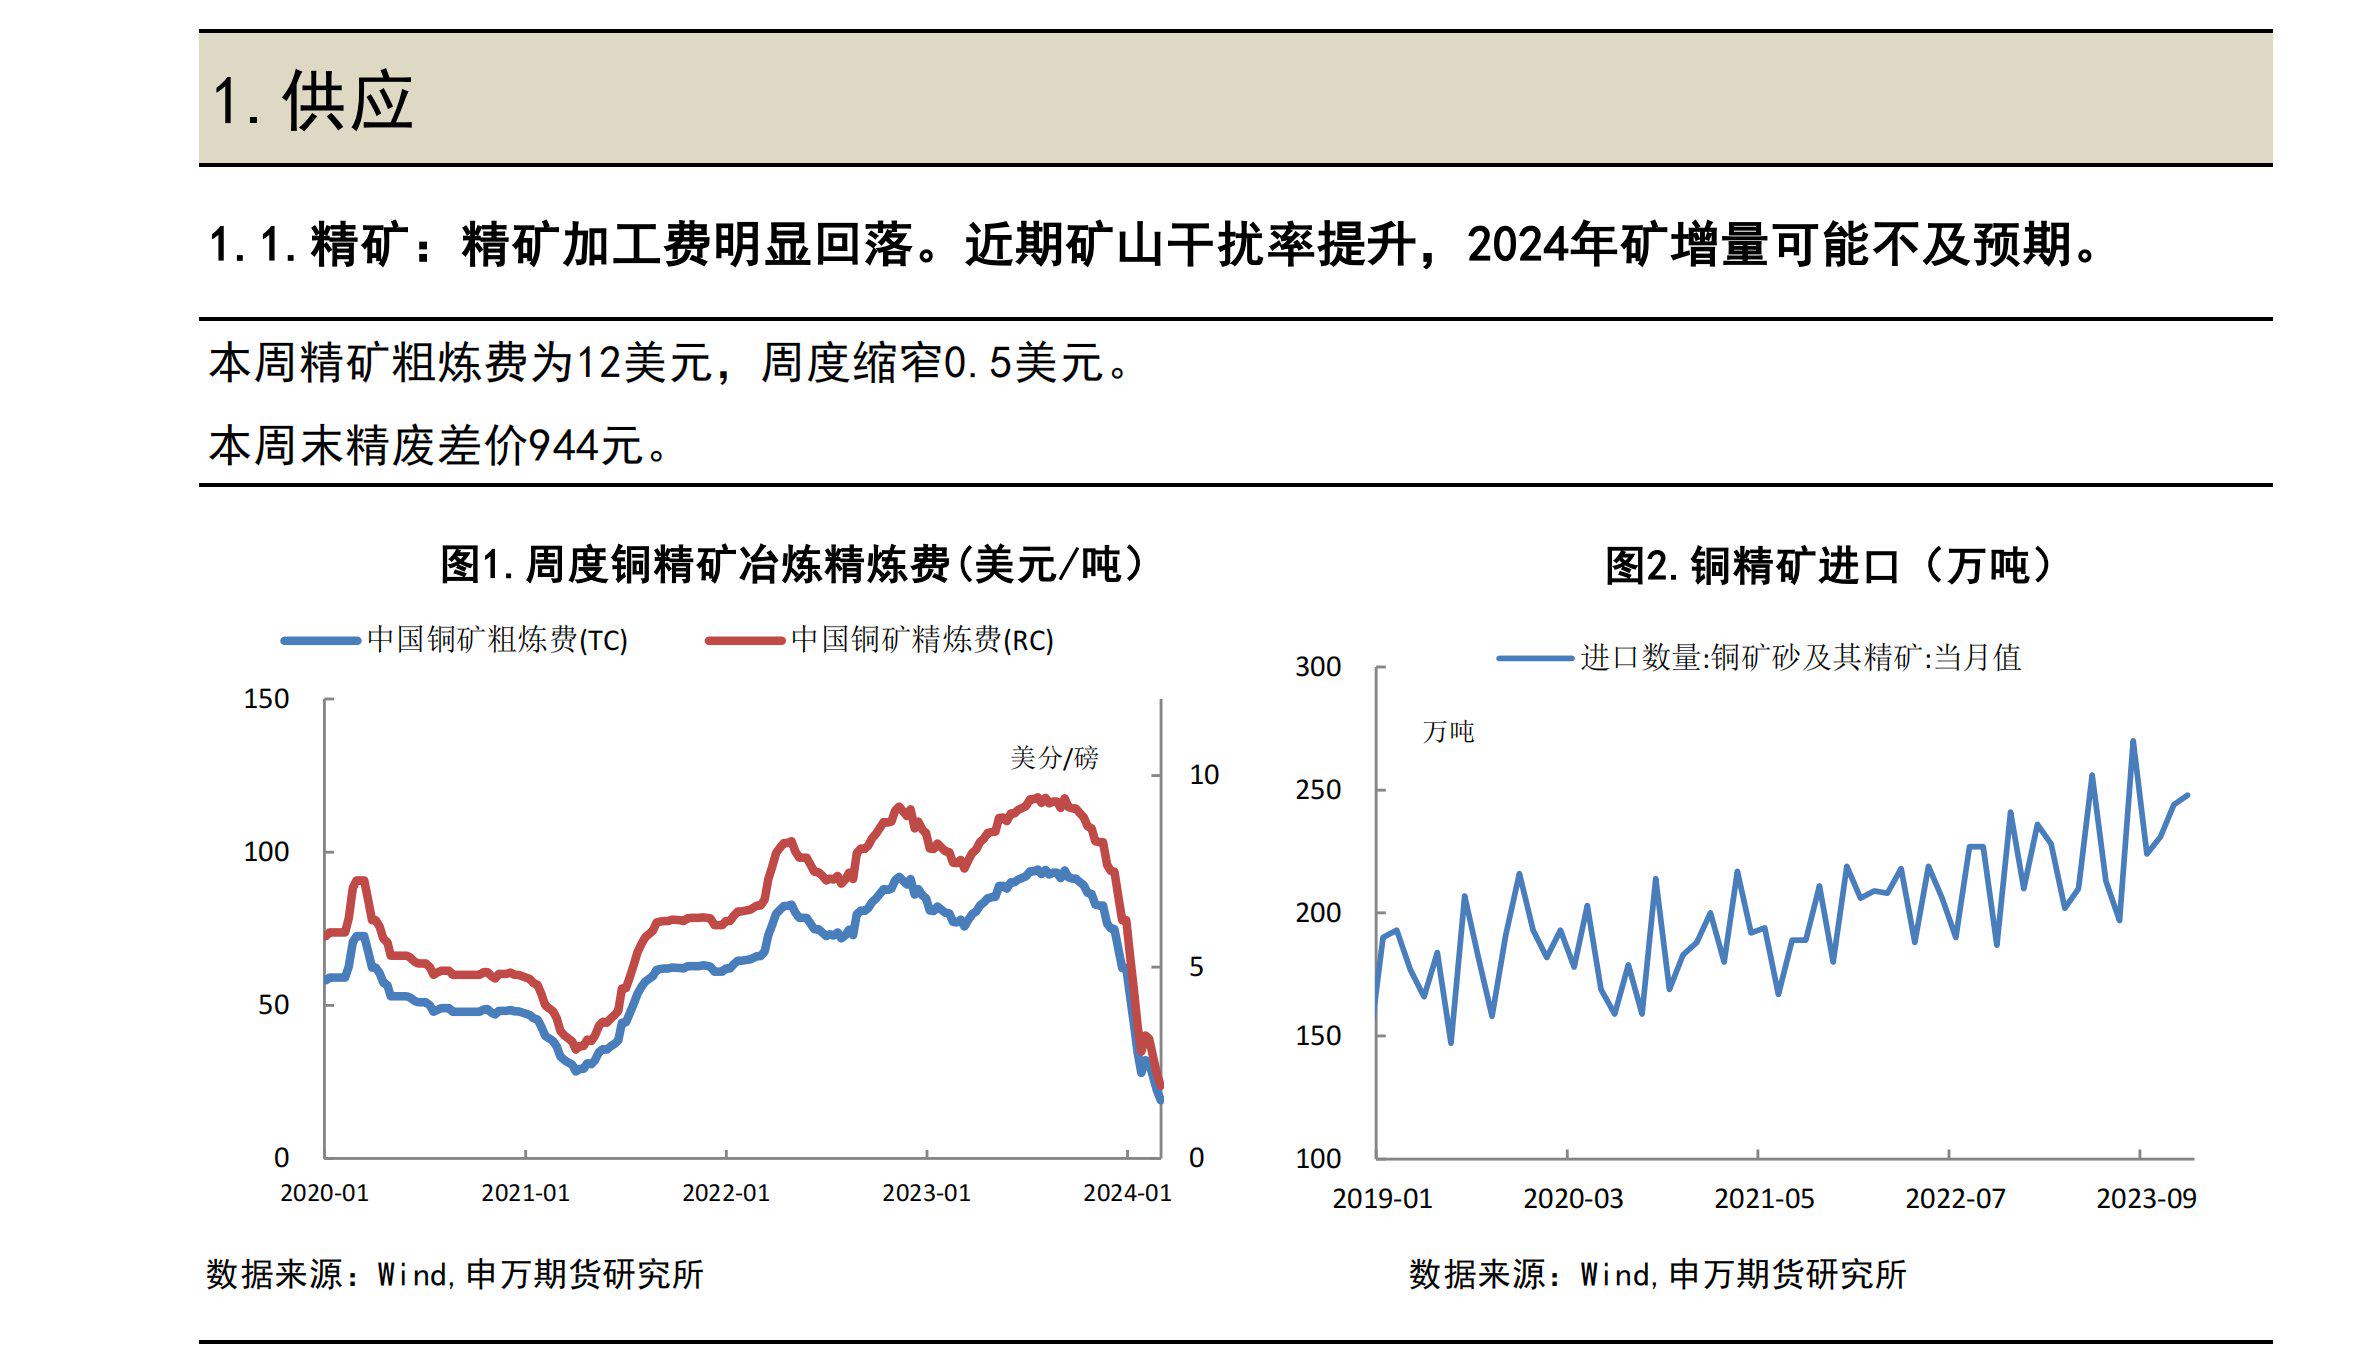 沪锌延续震荡行情 市场存在炼厂减产预期